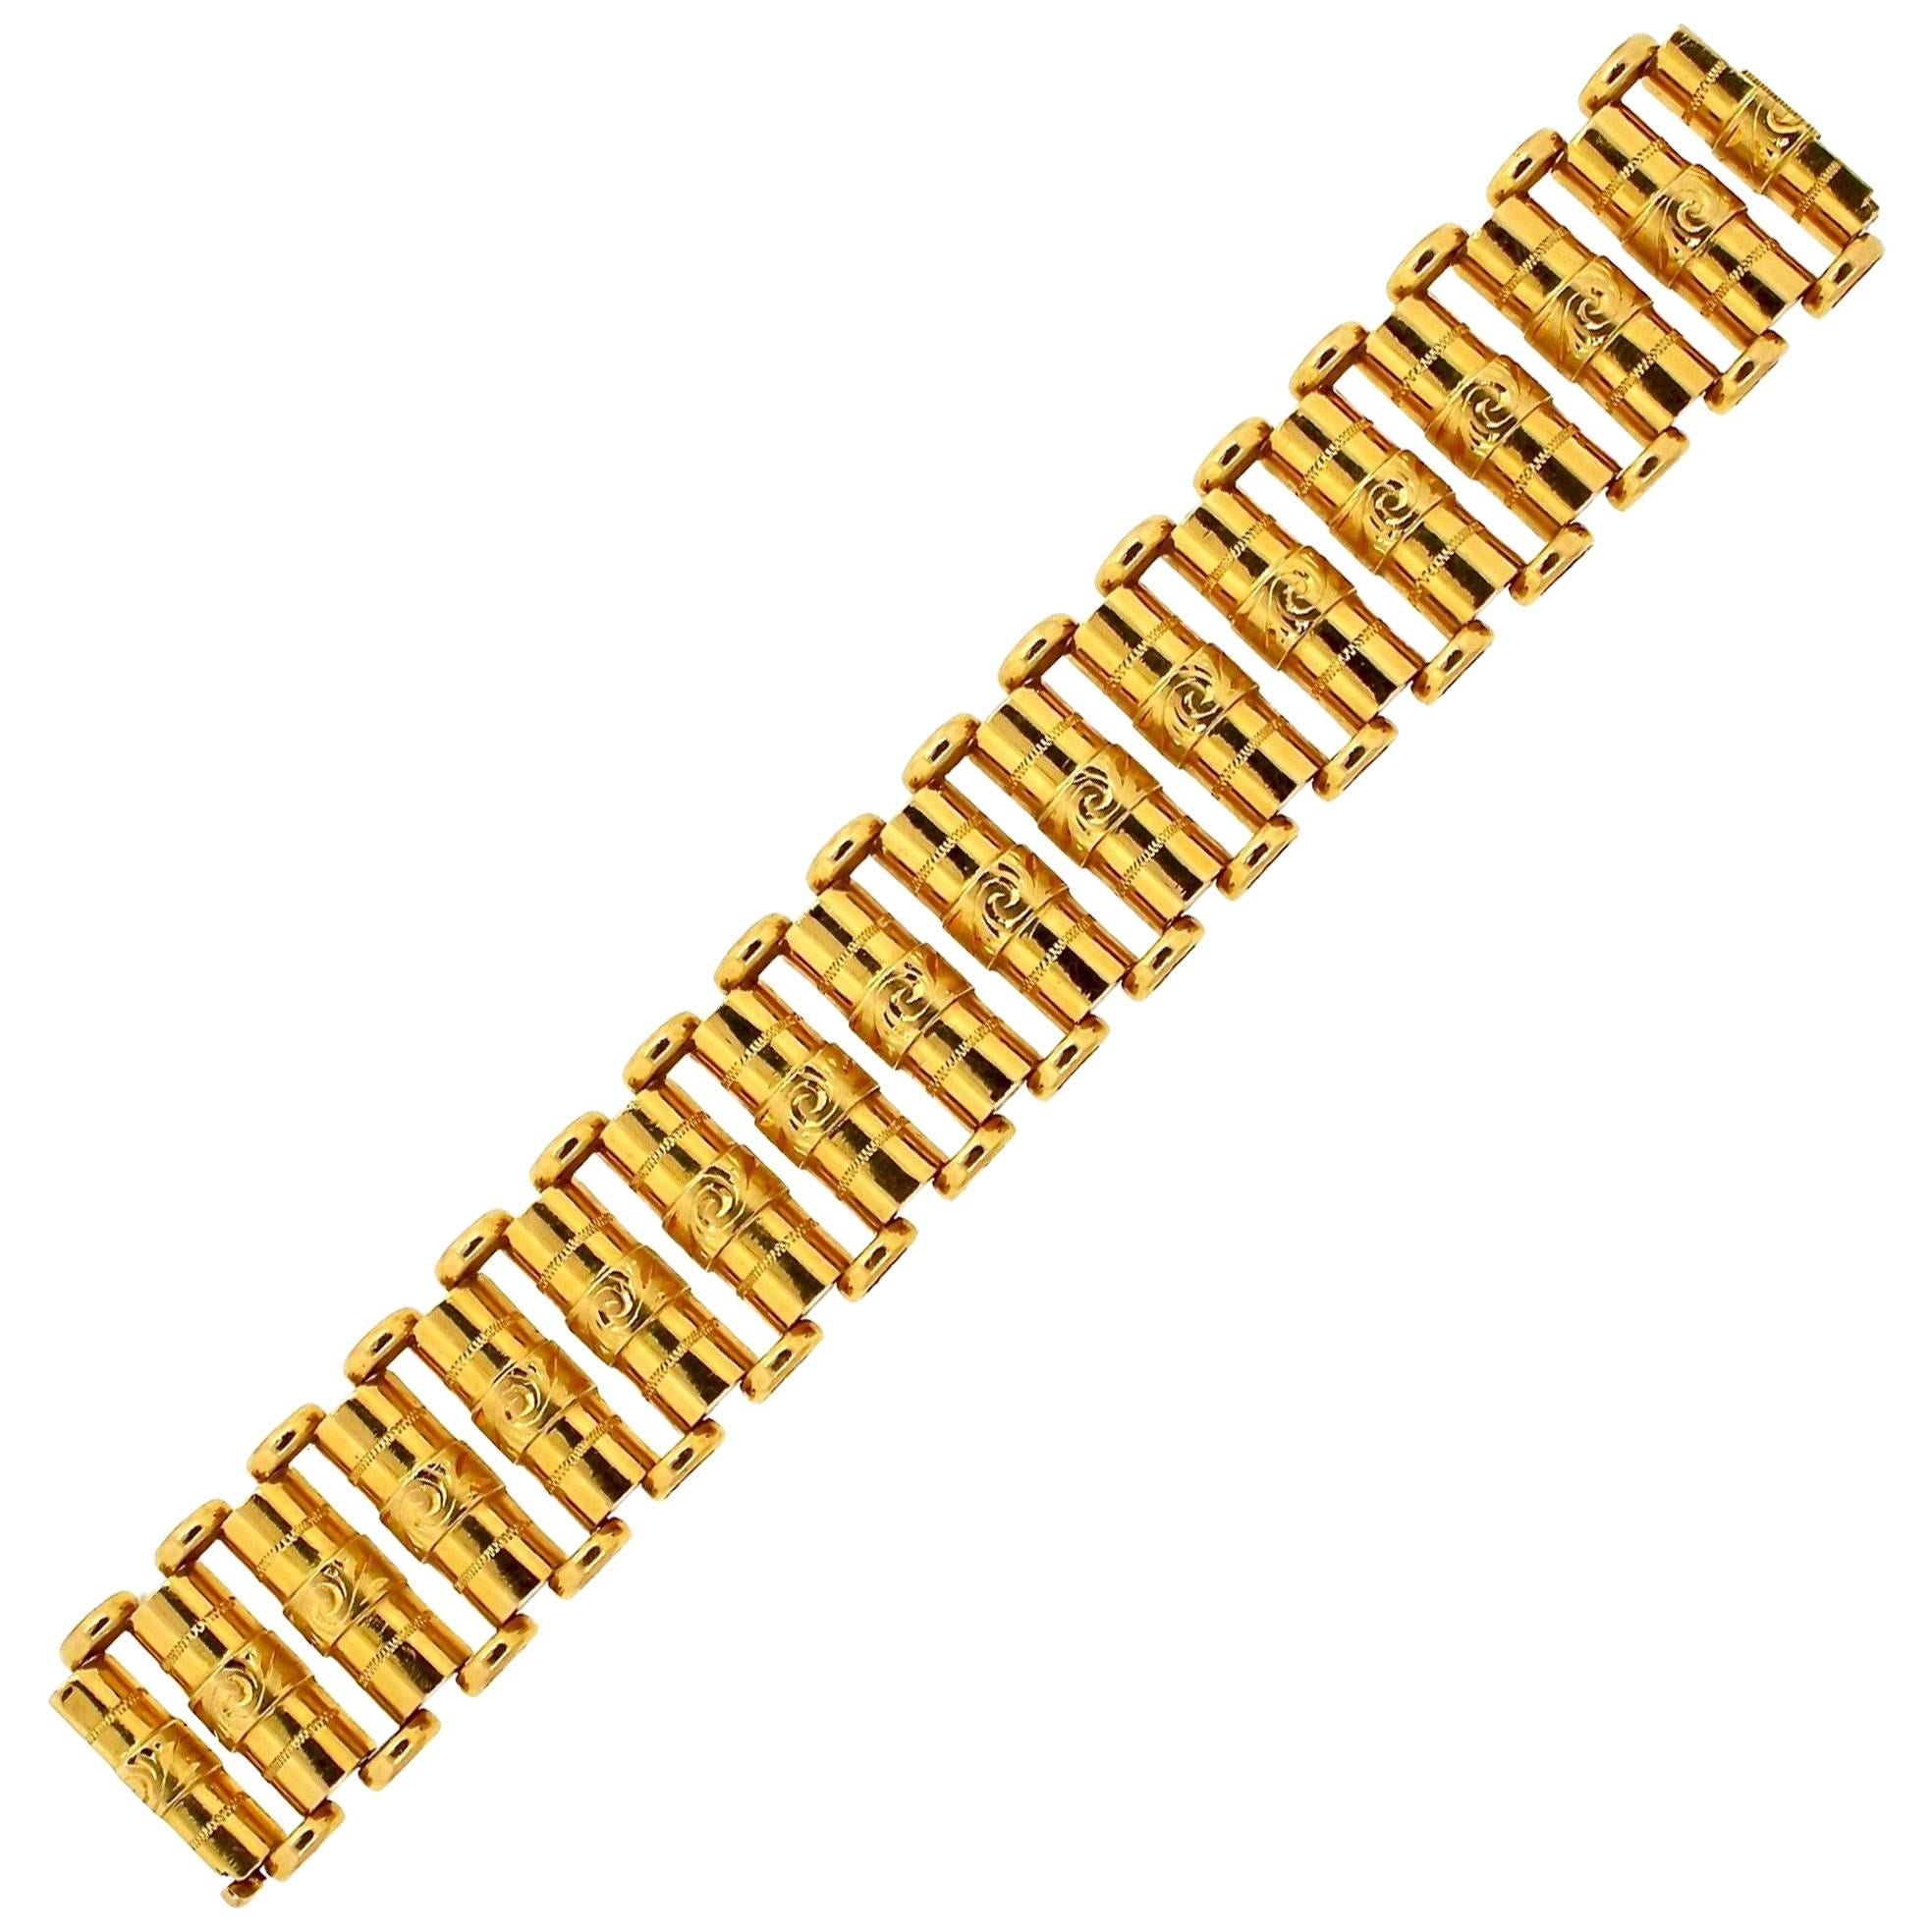 Antique Victorian 18 Karat Gold Wide Link Bracelet